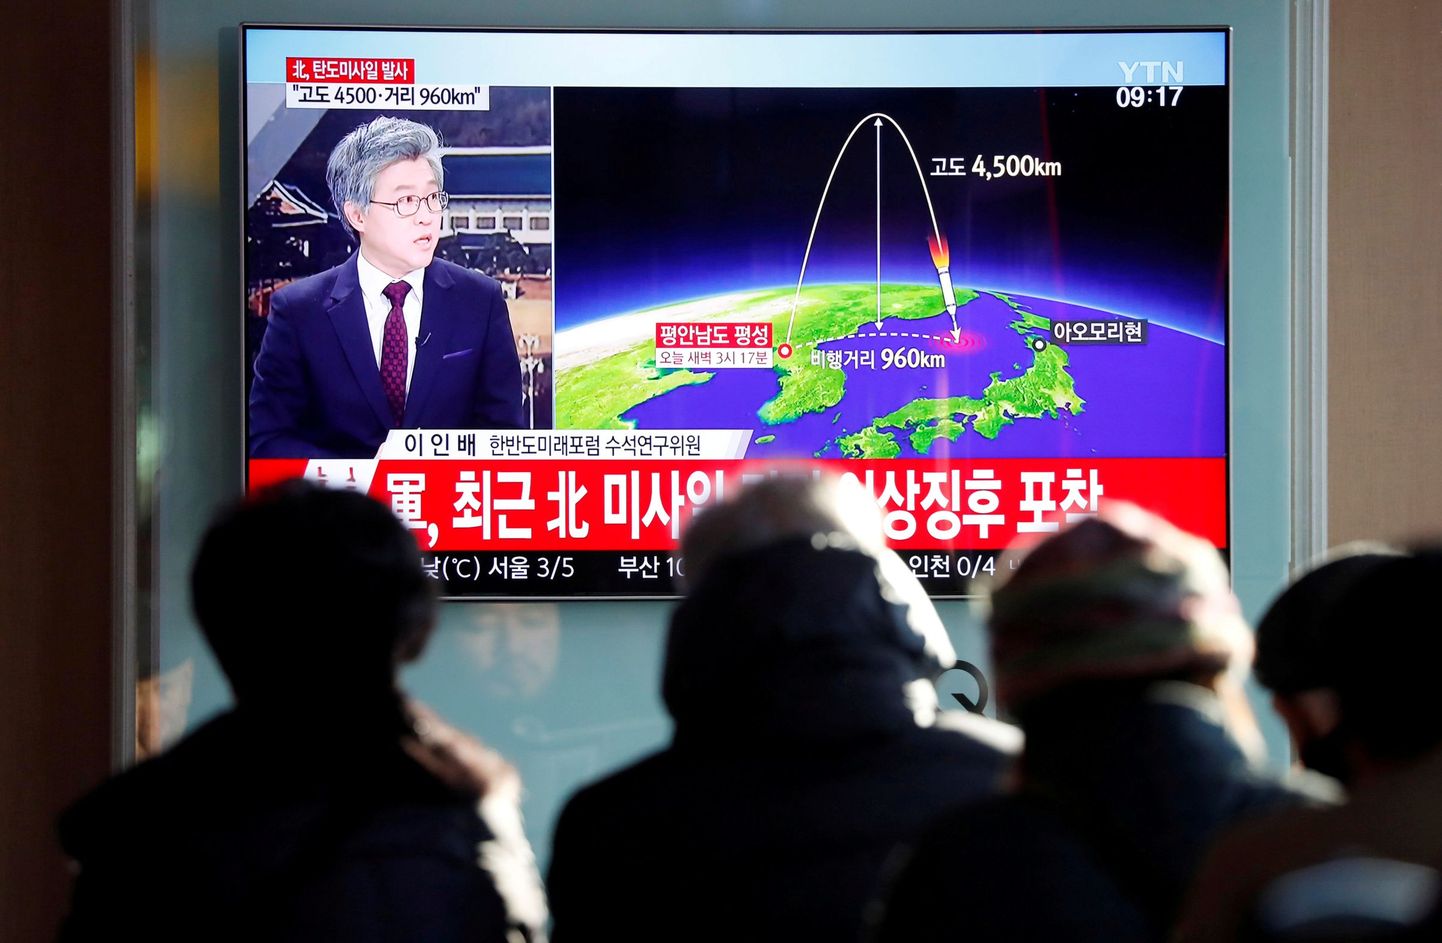 Inimesed vaatavad Soulis teleuudiseid põhjanaabri järjekordsest raketitulistamisest.